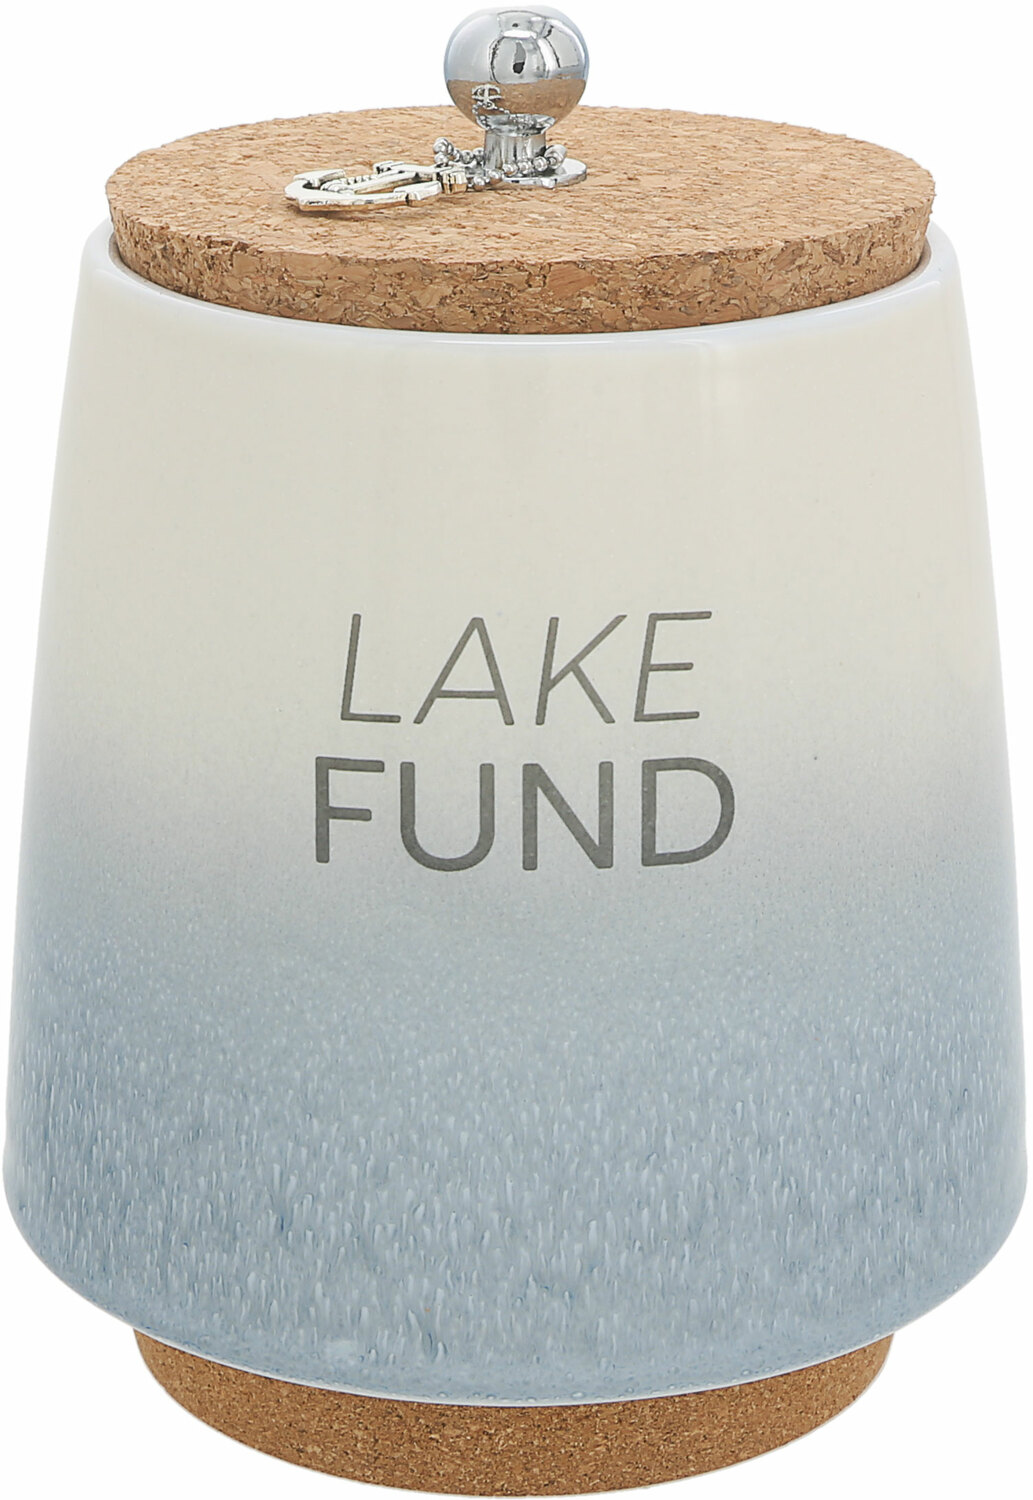 Lake by So Much Fun-d - Lake - 6.5" Ceramic Savings Bank